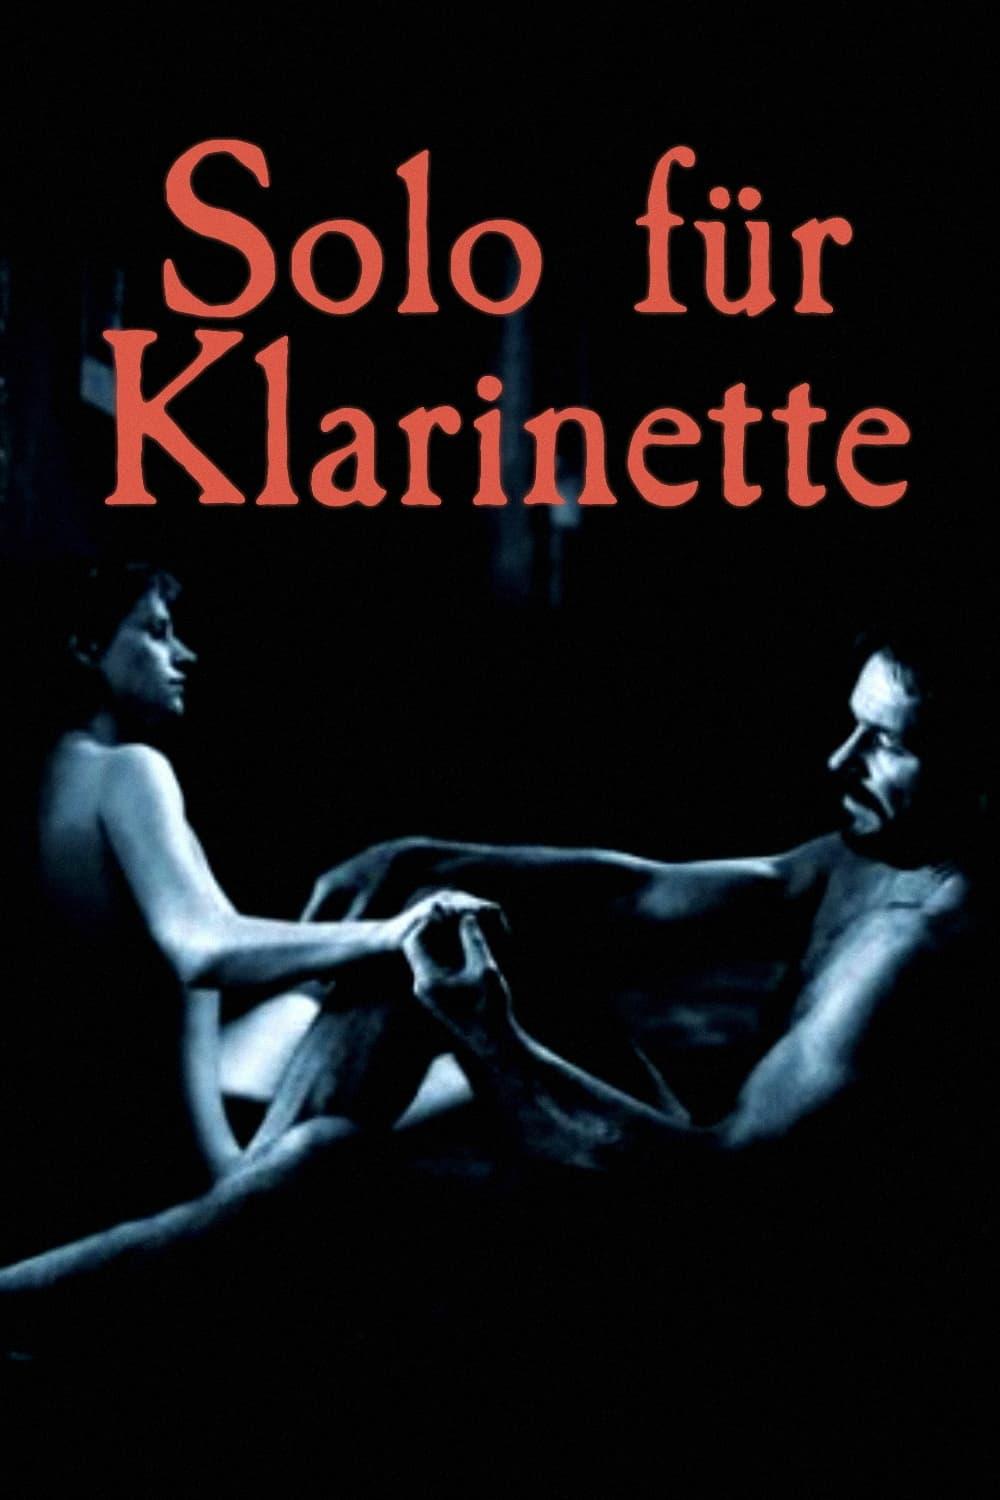 Solo für Klarinette poster